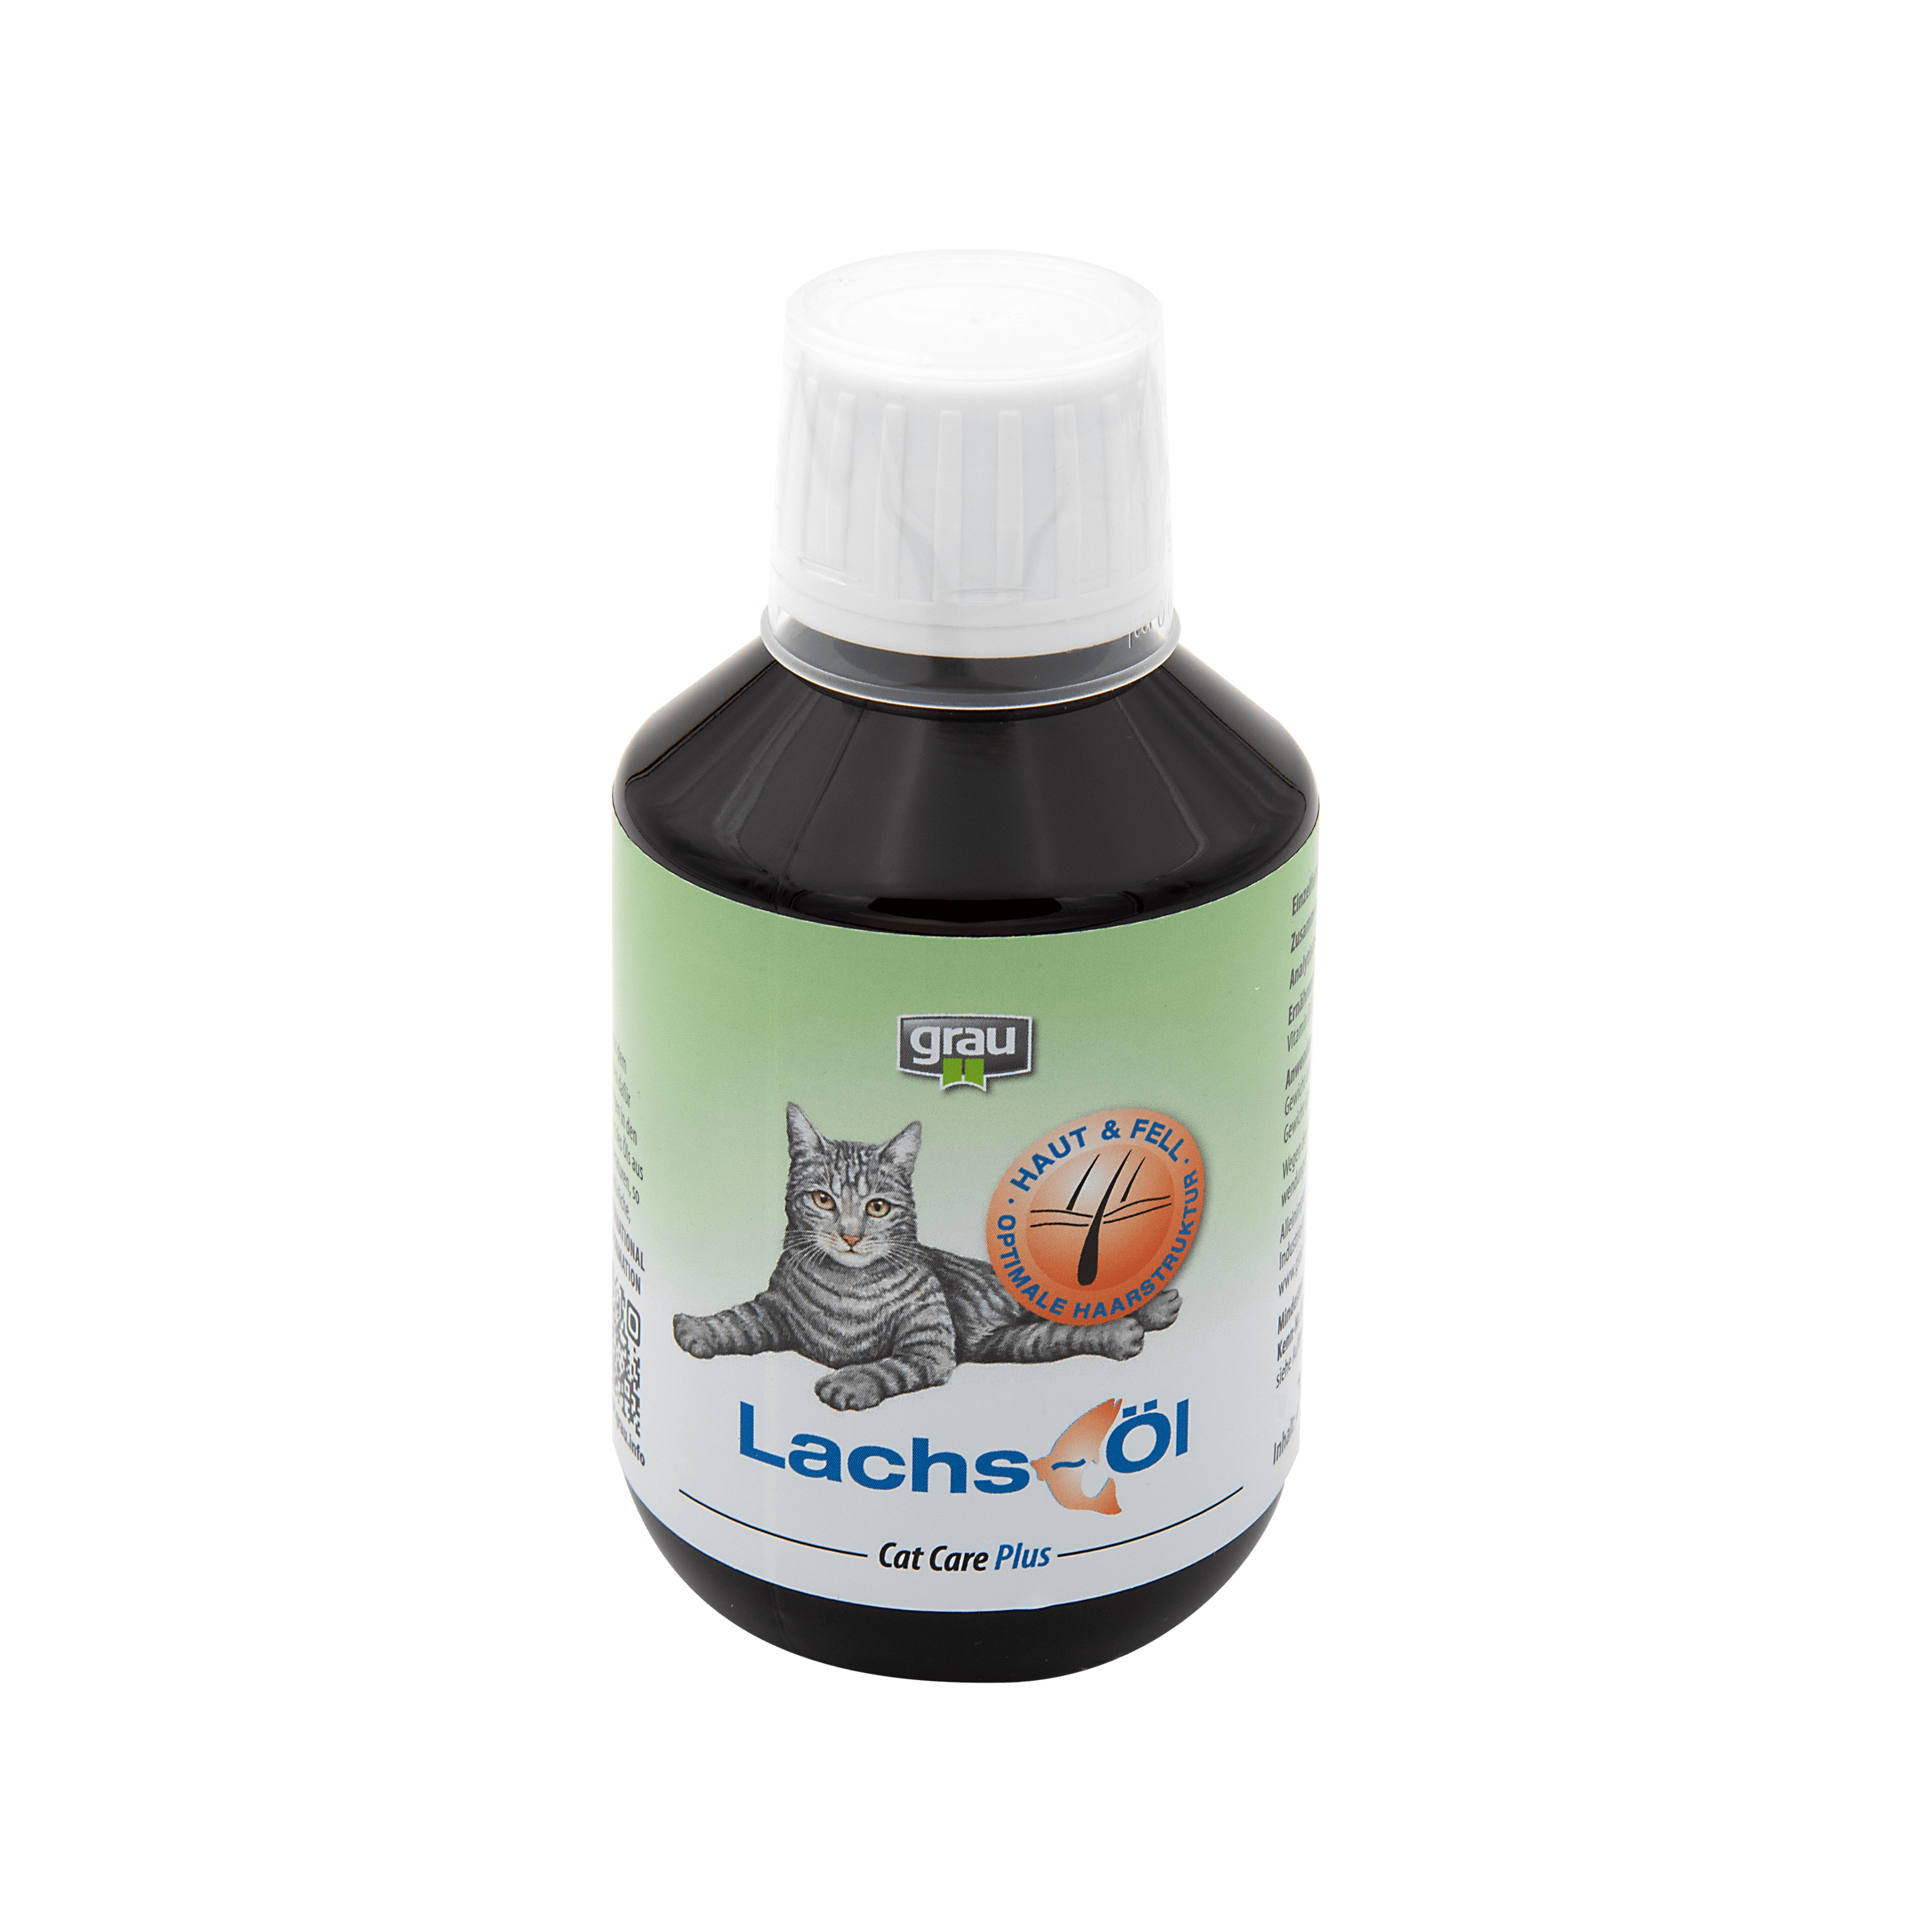 Lachs-Öl für Katzen mit einer Extraportion an Omega-3- und Omega-6-Fettsäuren, unterstützt Haut & Fell